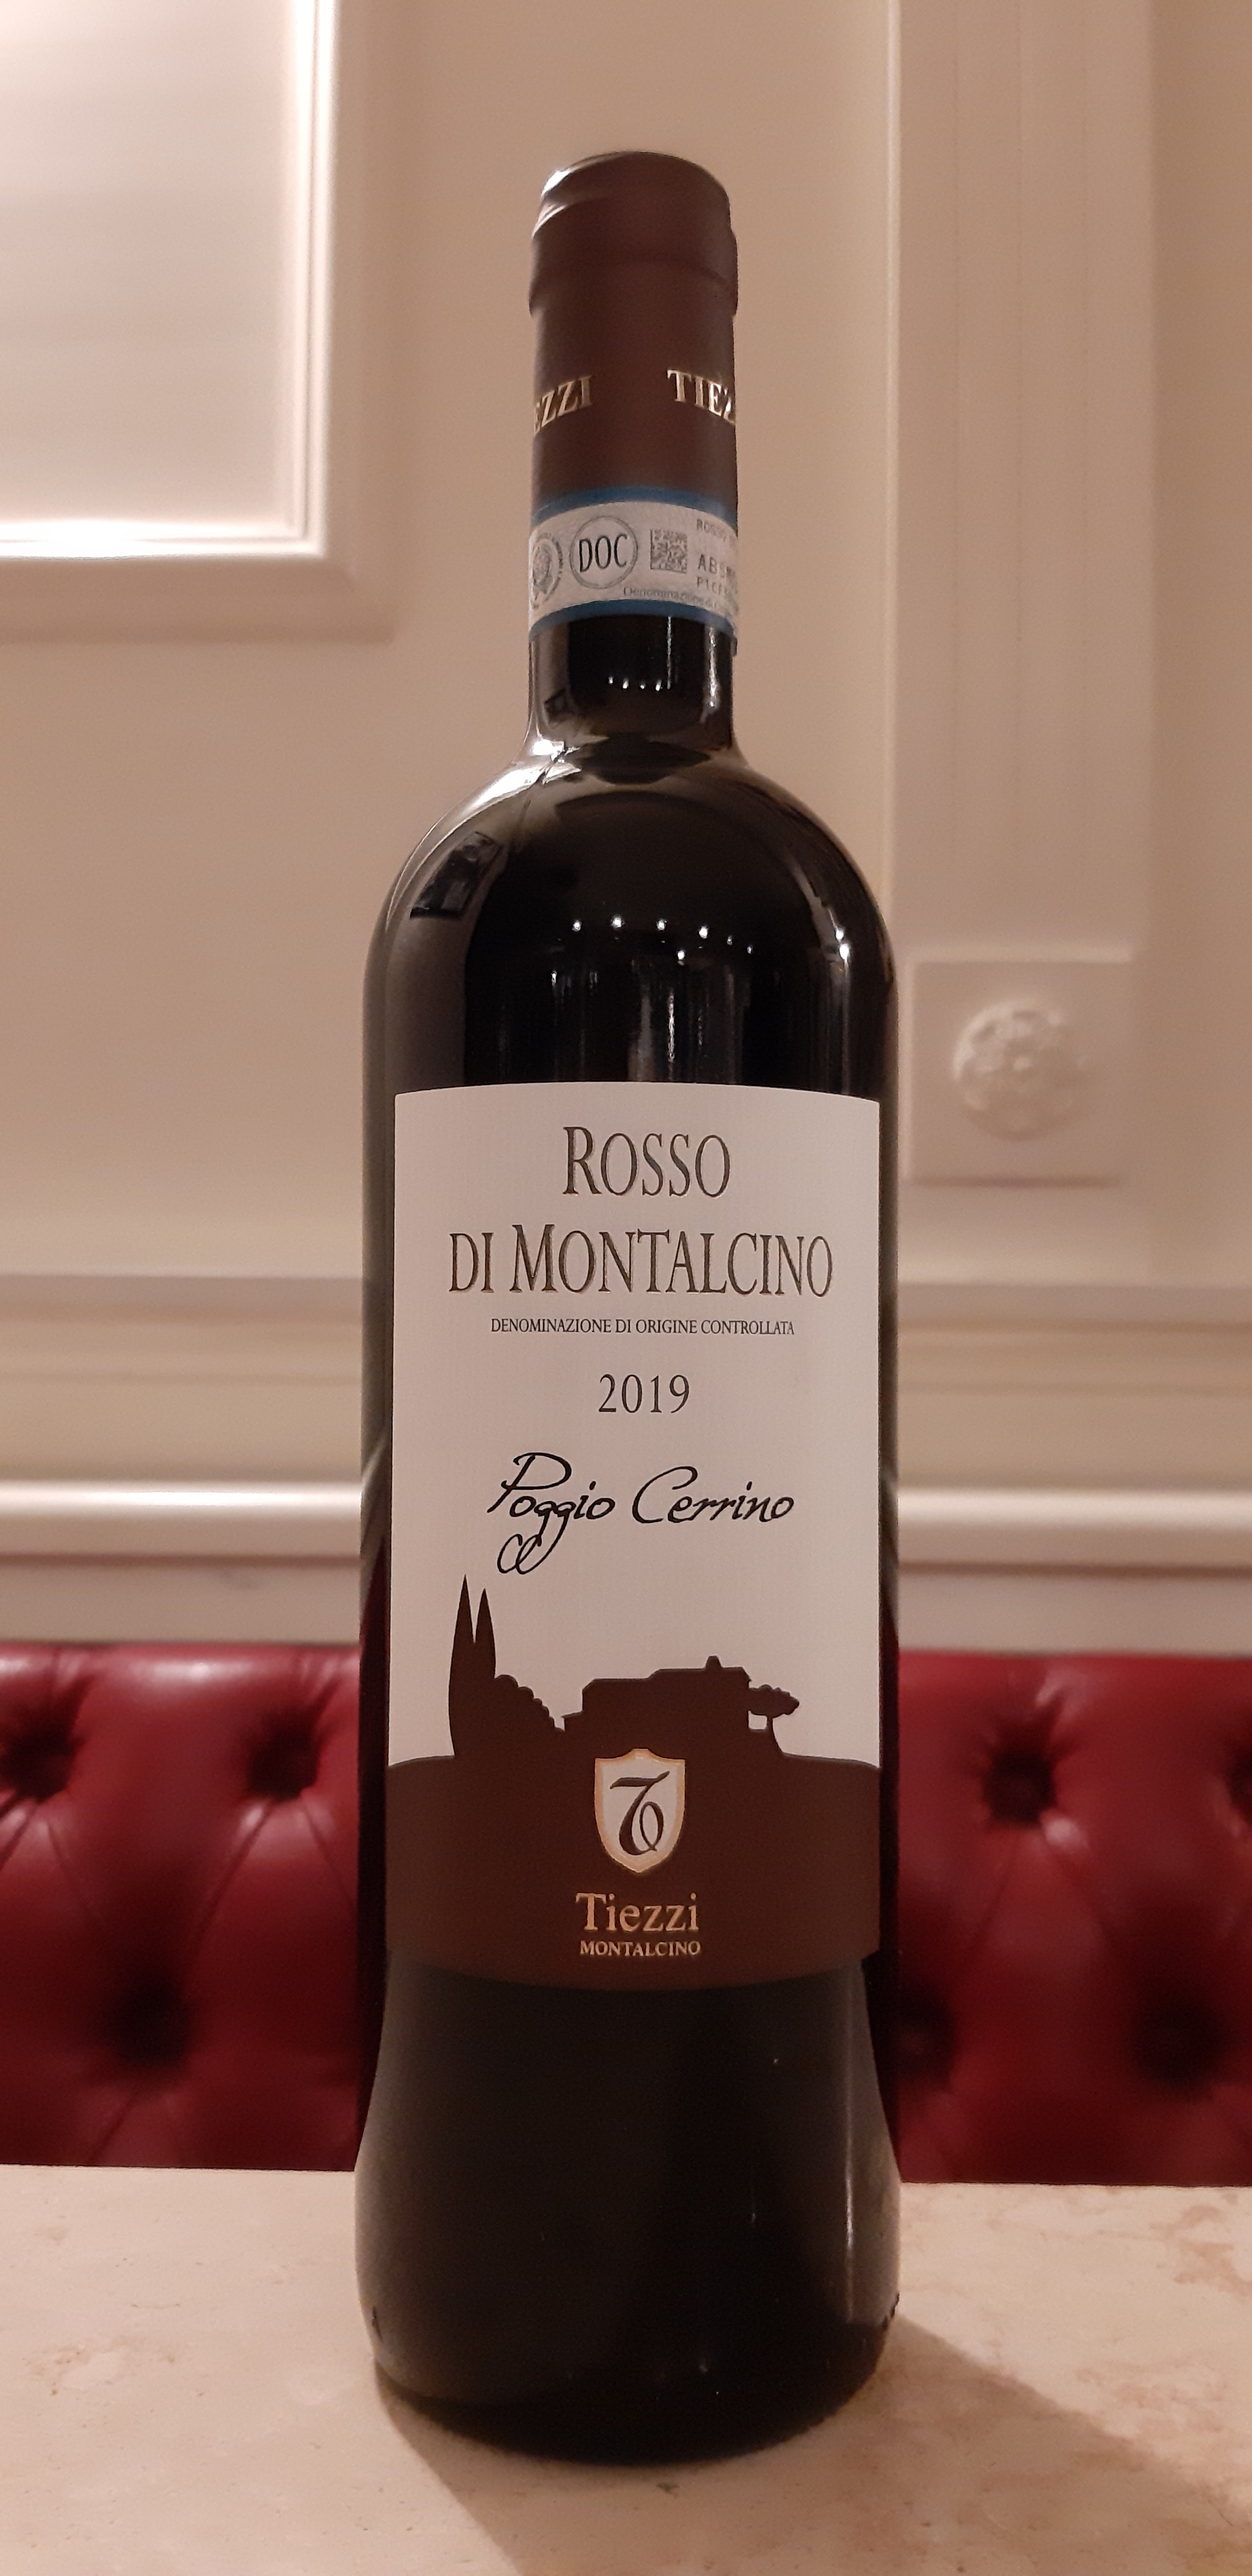 Rosso di Montalcino DOC " Poggio Cerrino " 2019 | Tiezzi